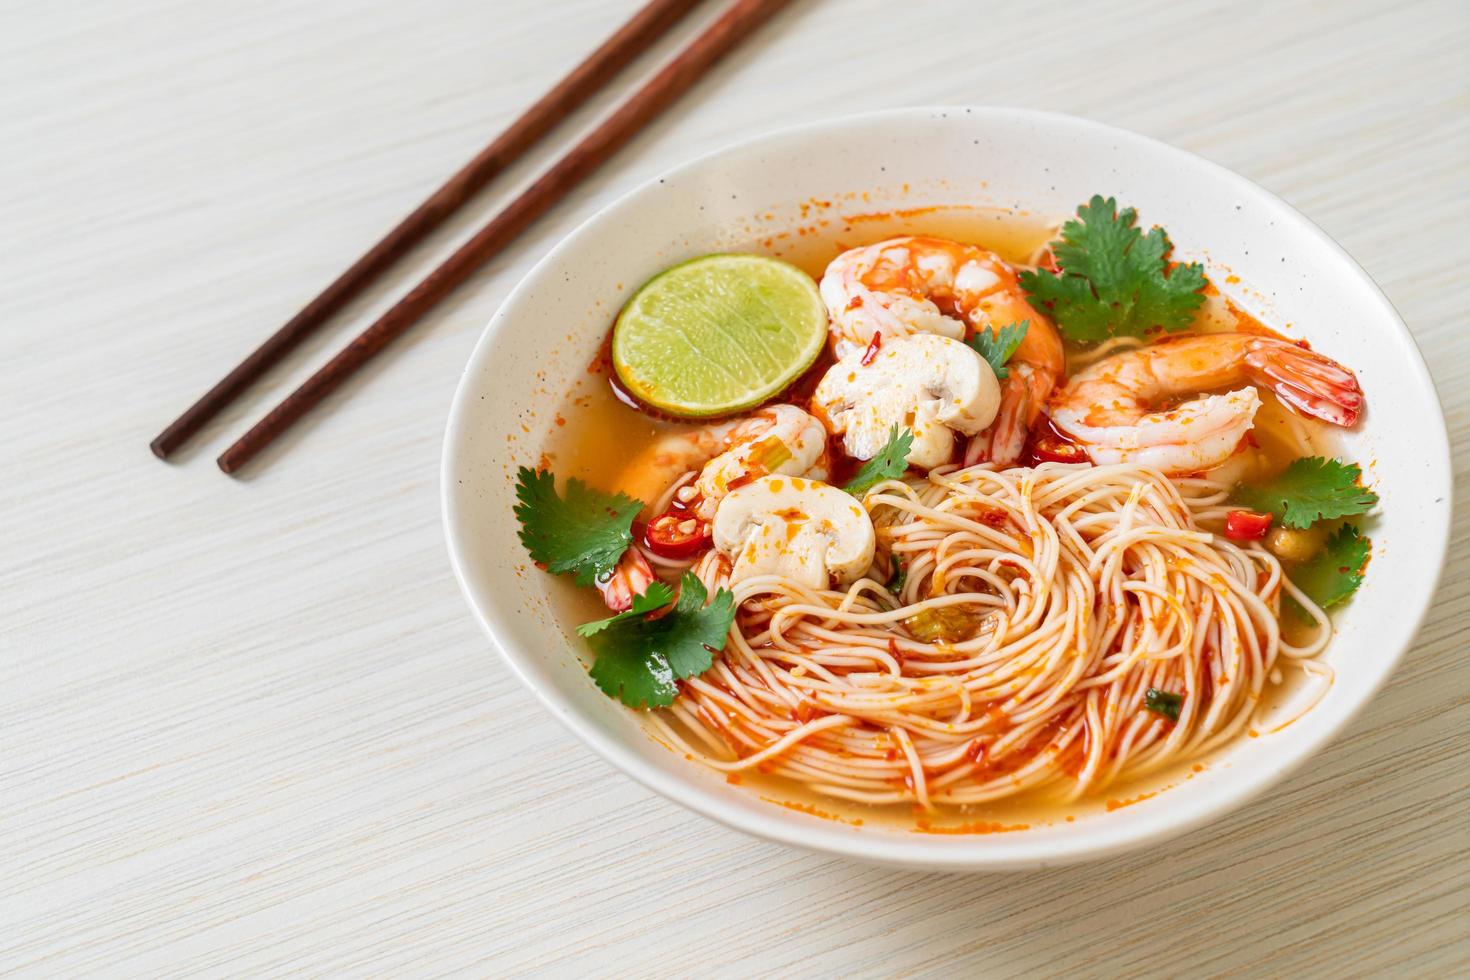 nouilles avec soupe épicée et crevettes dans un bol blanc, ou tom yum kung - style cuisine asiatique photo